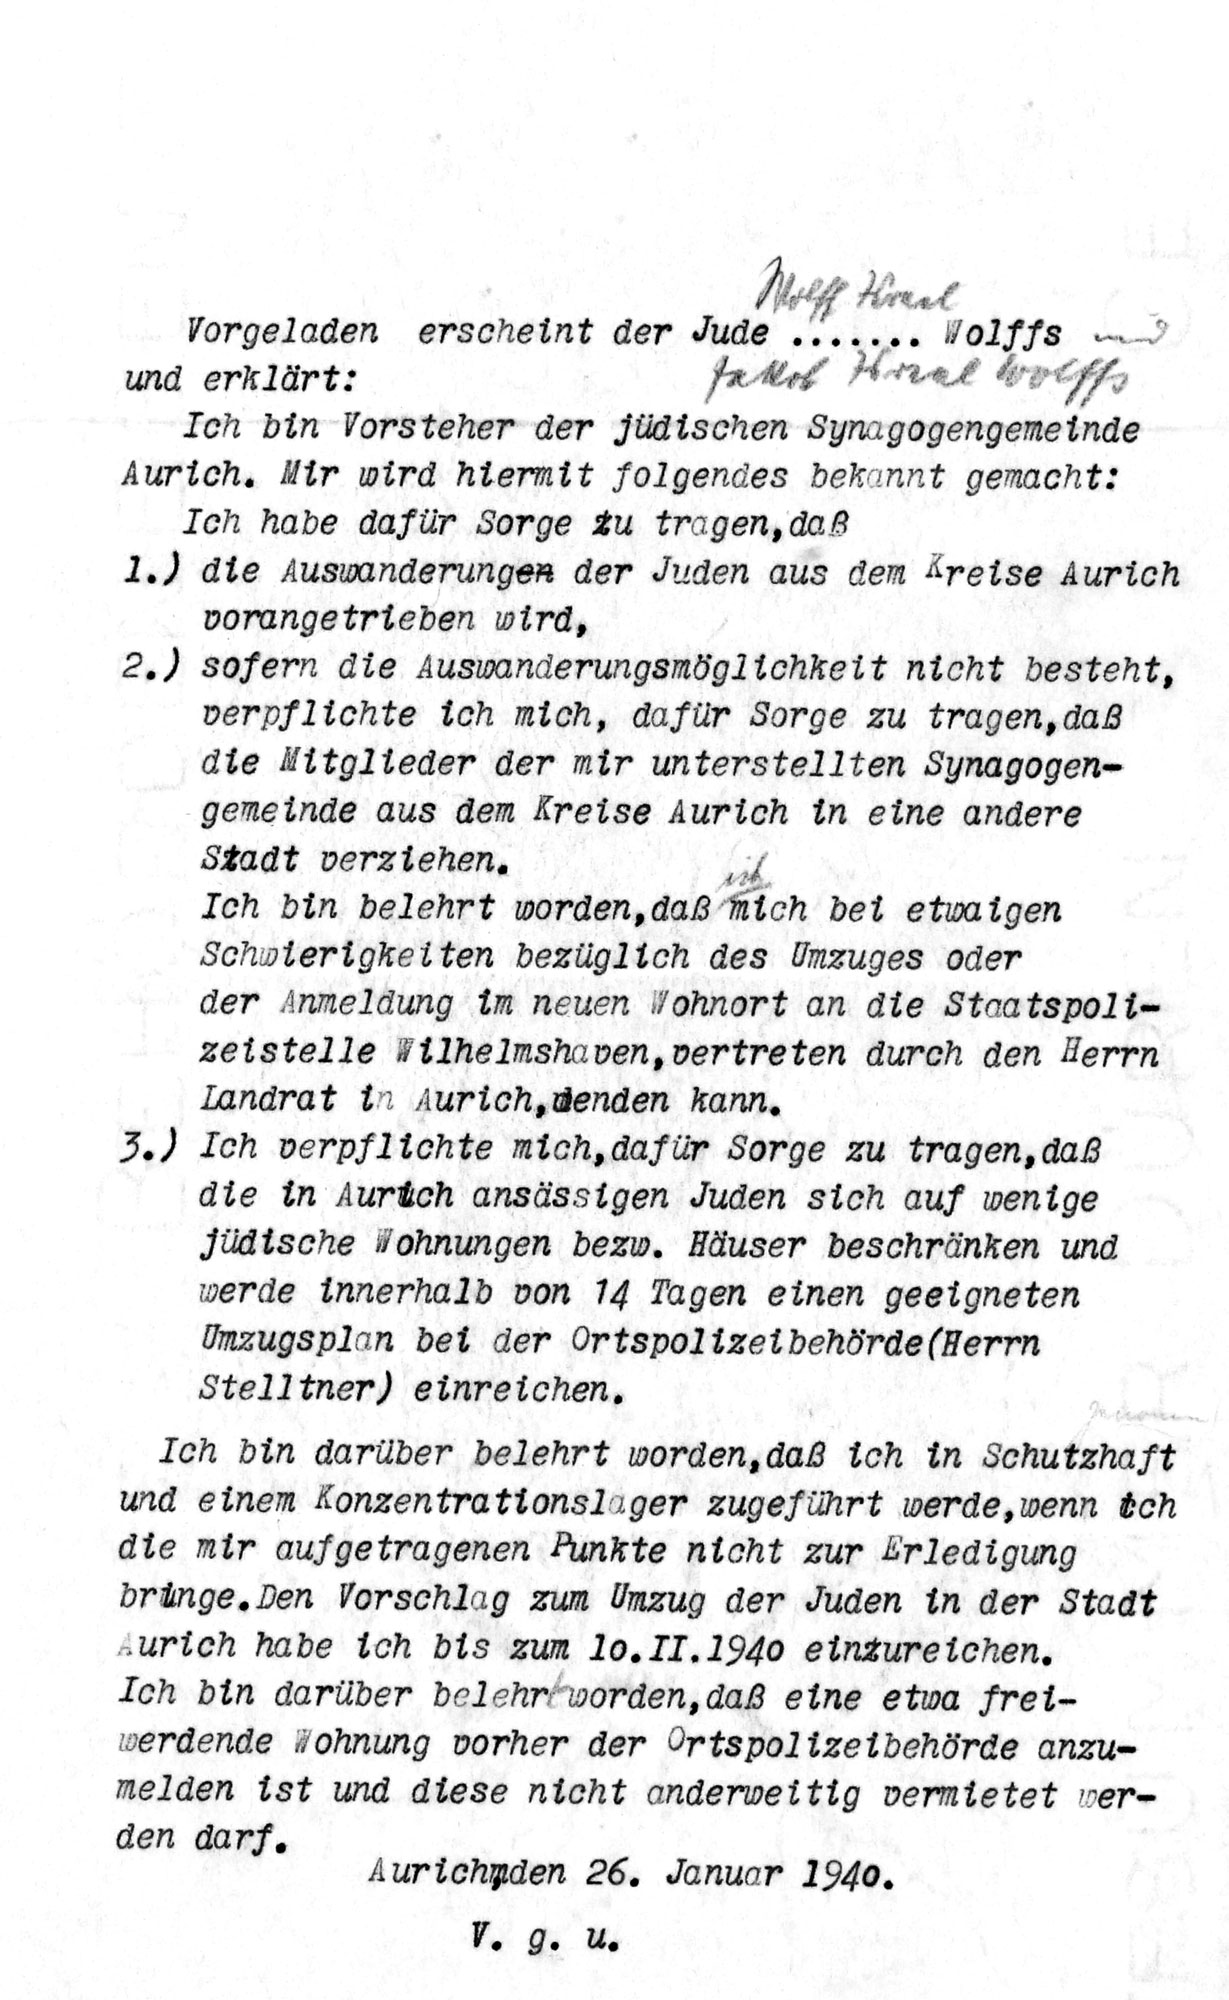 Am 26. Januar 1940 bekommt Wolff Benjamin Wolffs von der Gestapo die Anweisung, den Wegzug aller Juden aus Aurich zu organisieren. Er muss unterschreiben.